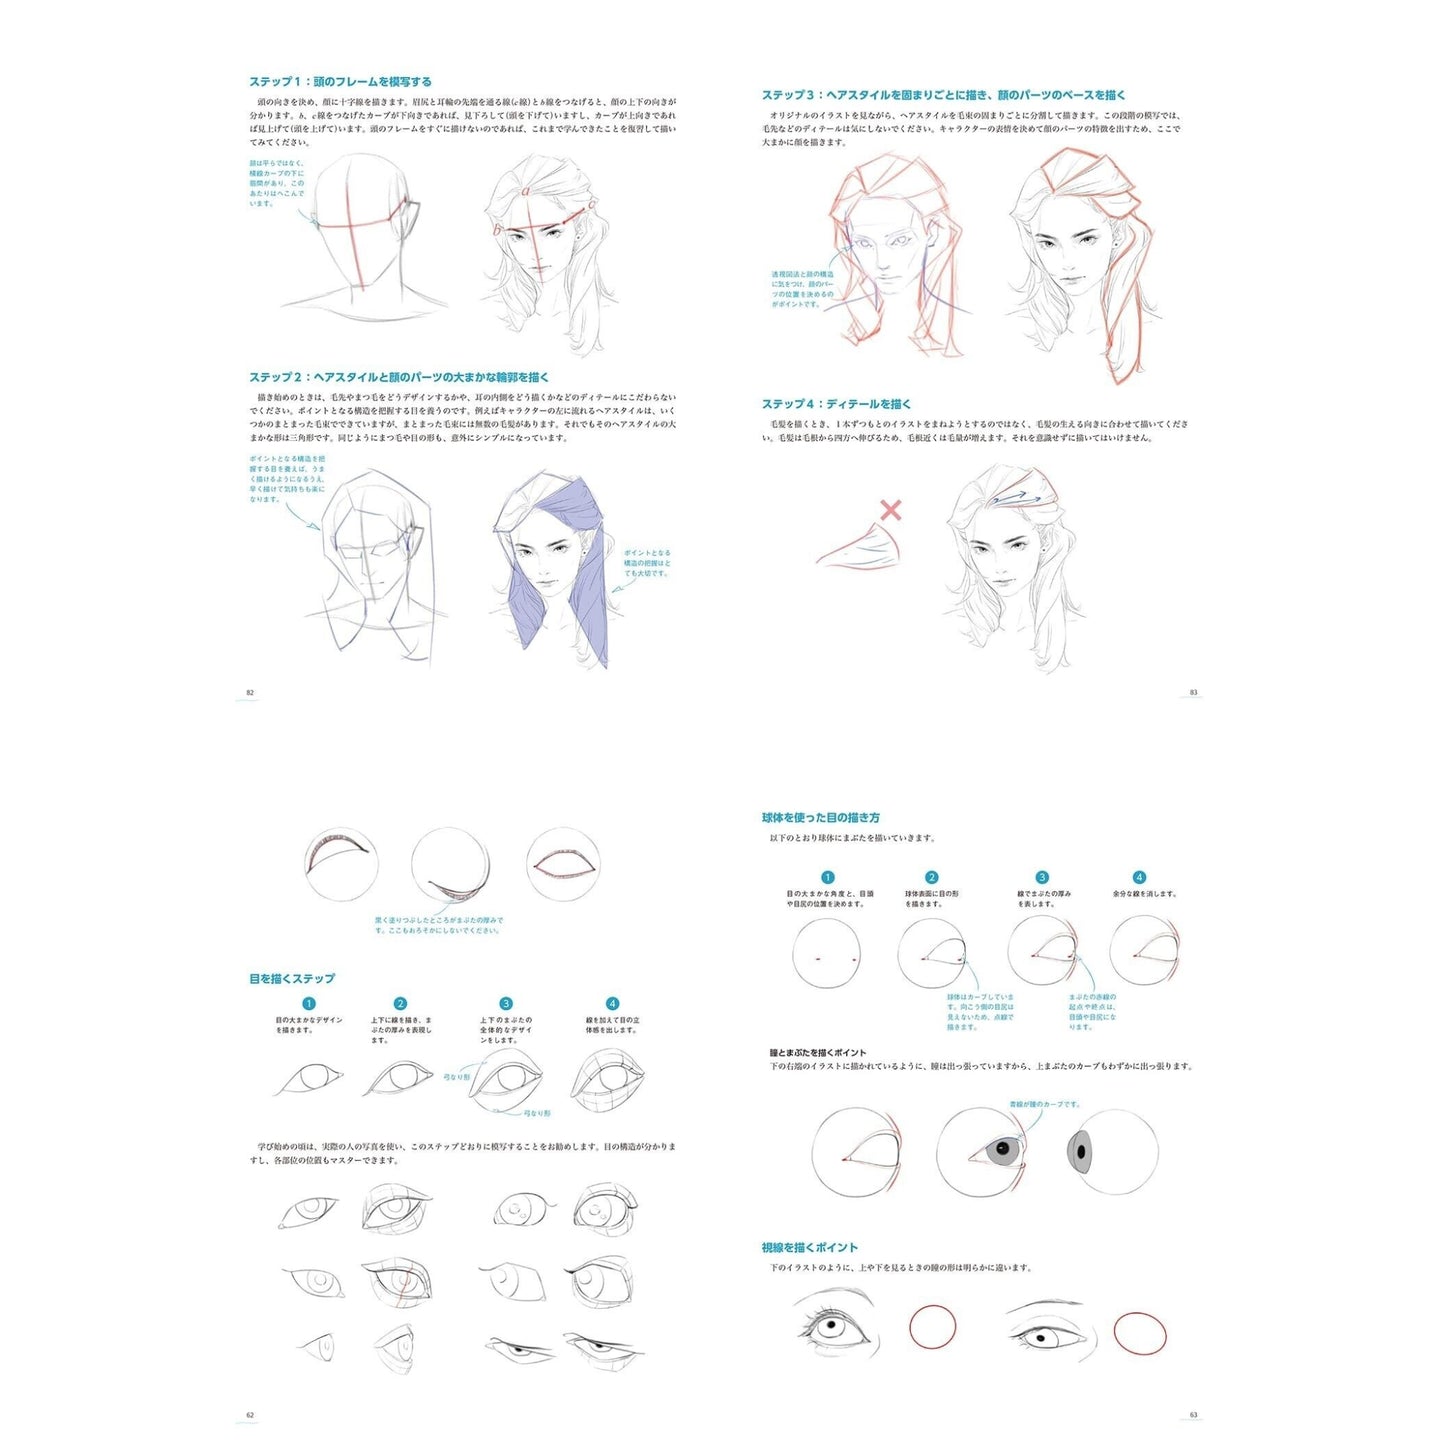 How to draw - jap. Zeichenbuch - die Bewegung des menschlichen Körpers